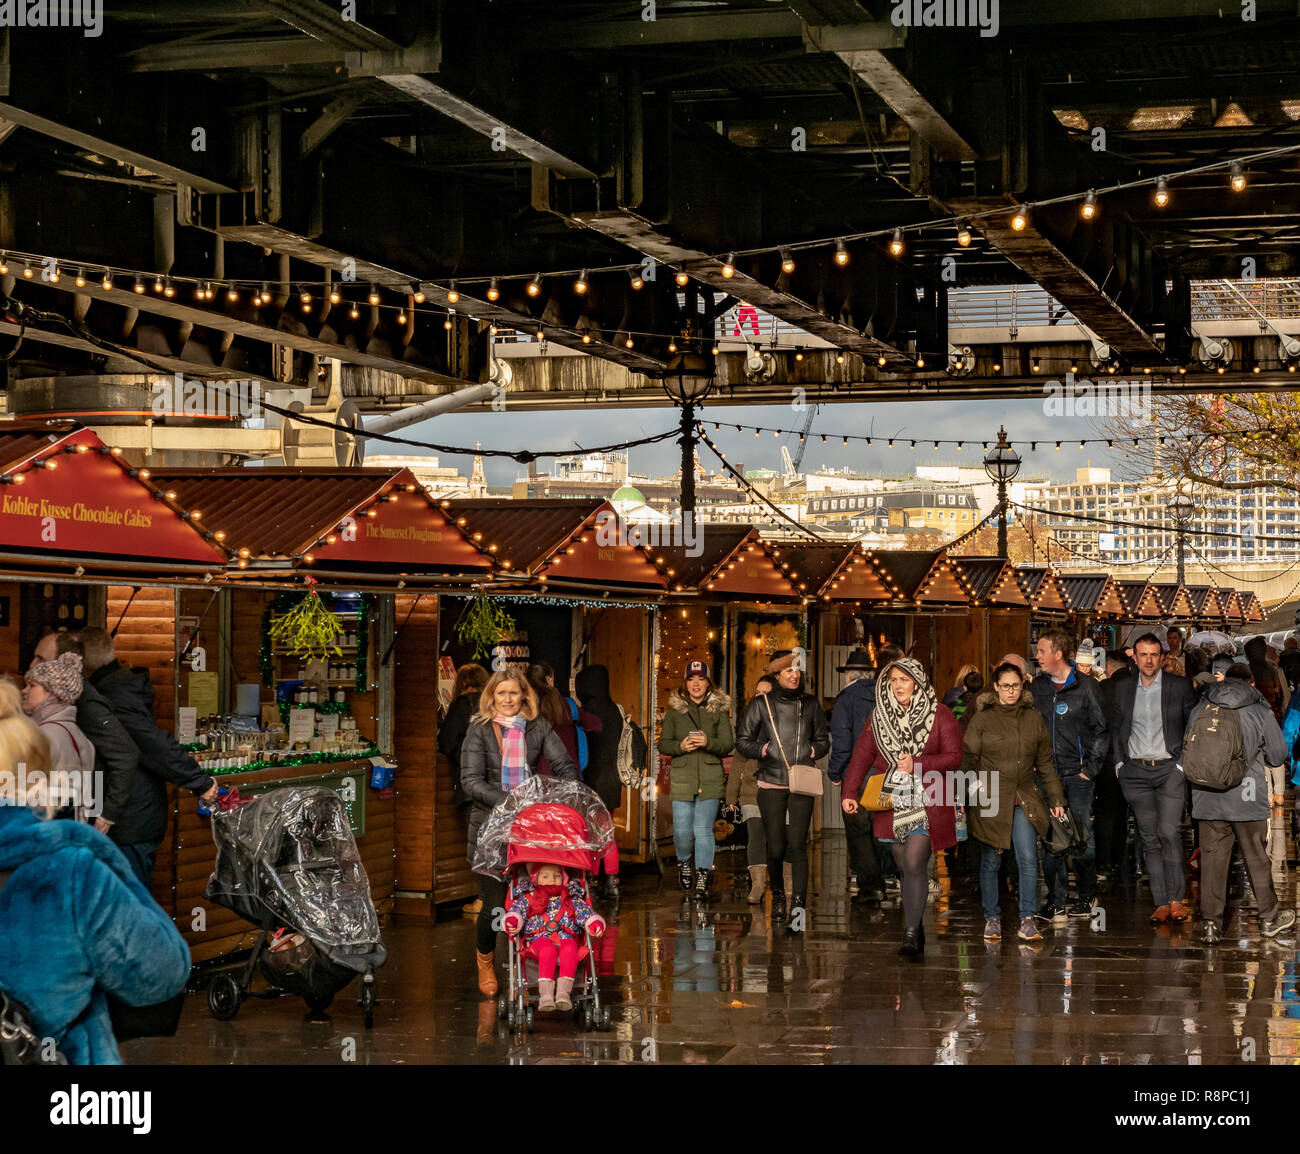 Southbank mercado invernal (Mercado de Navidad) bajo el puente Hungerford, Londres, Reino Unido. Foto de stock